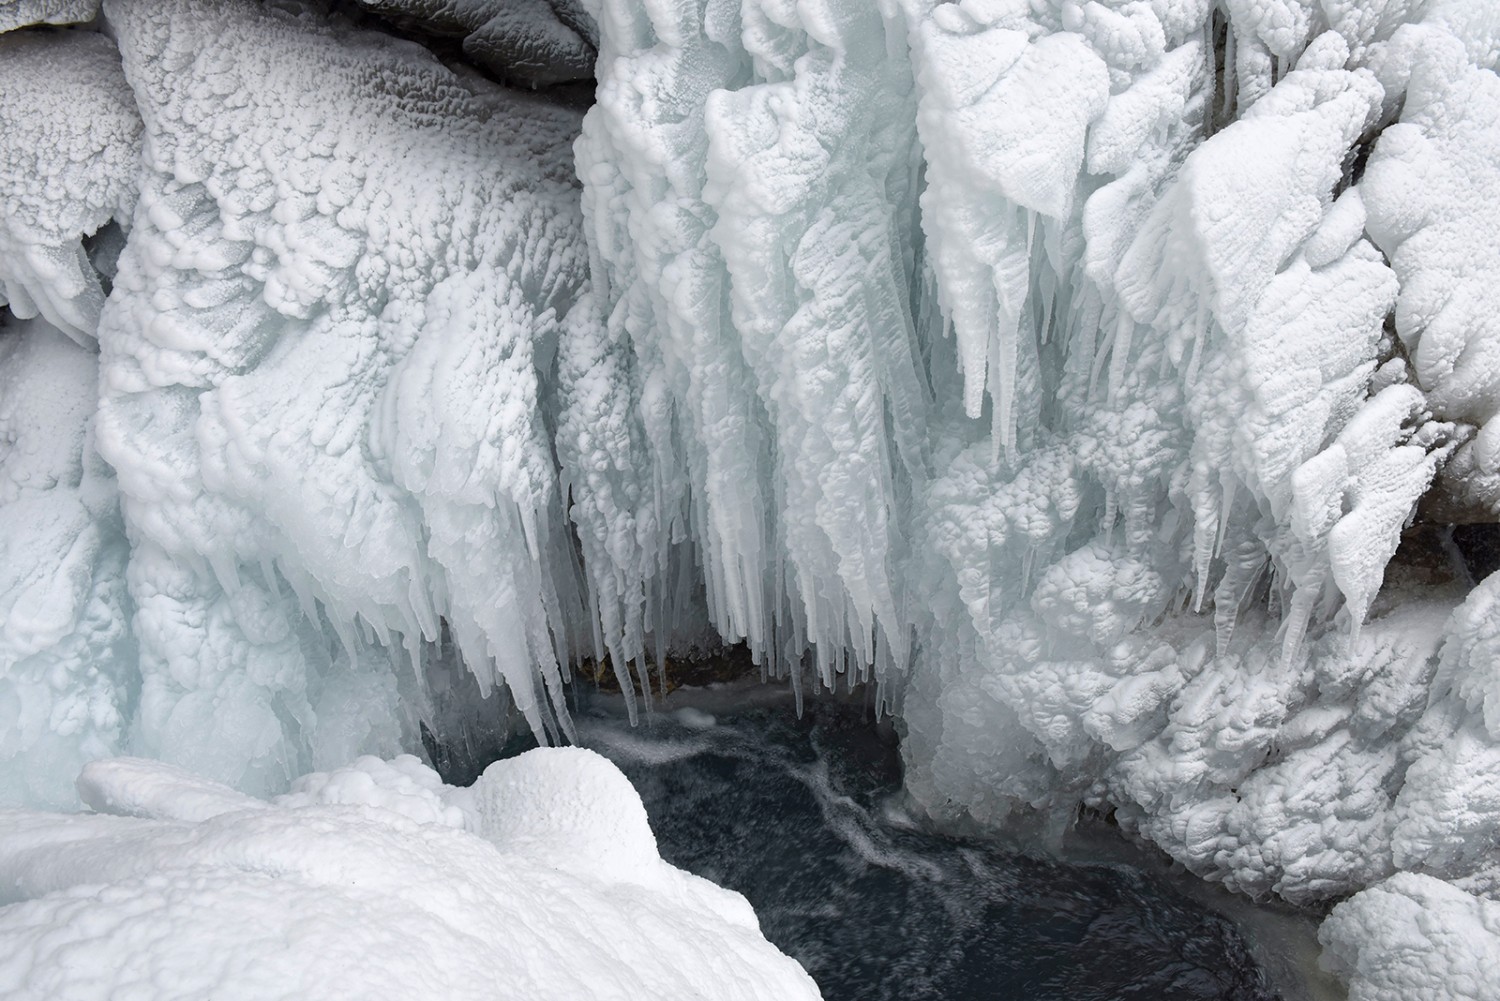 Les chutes de la Simme figées dans la glace.
